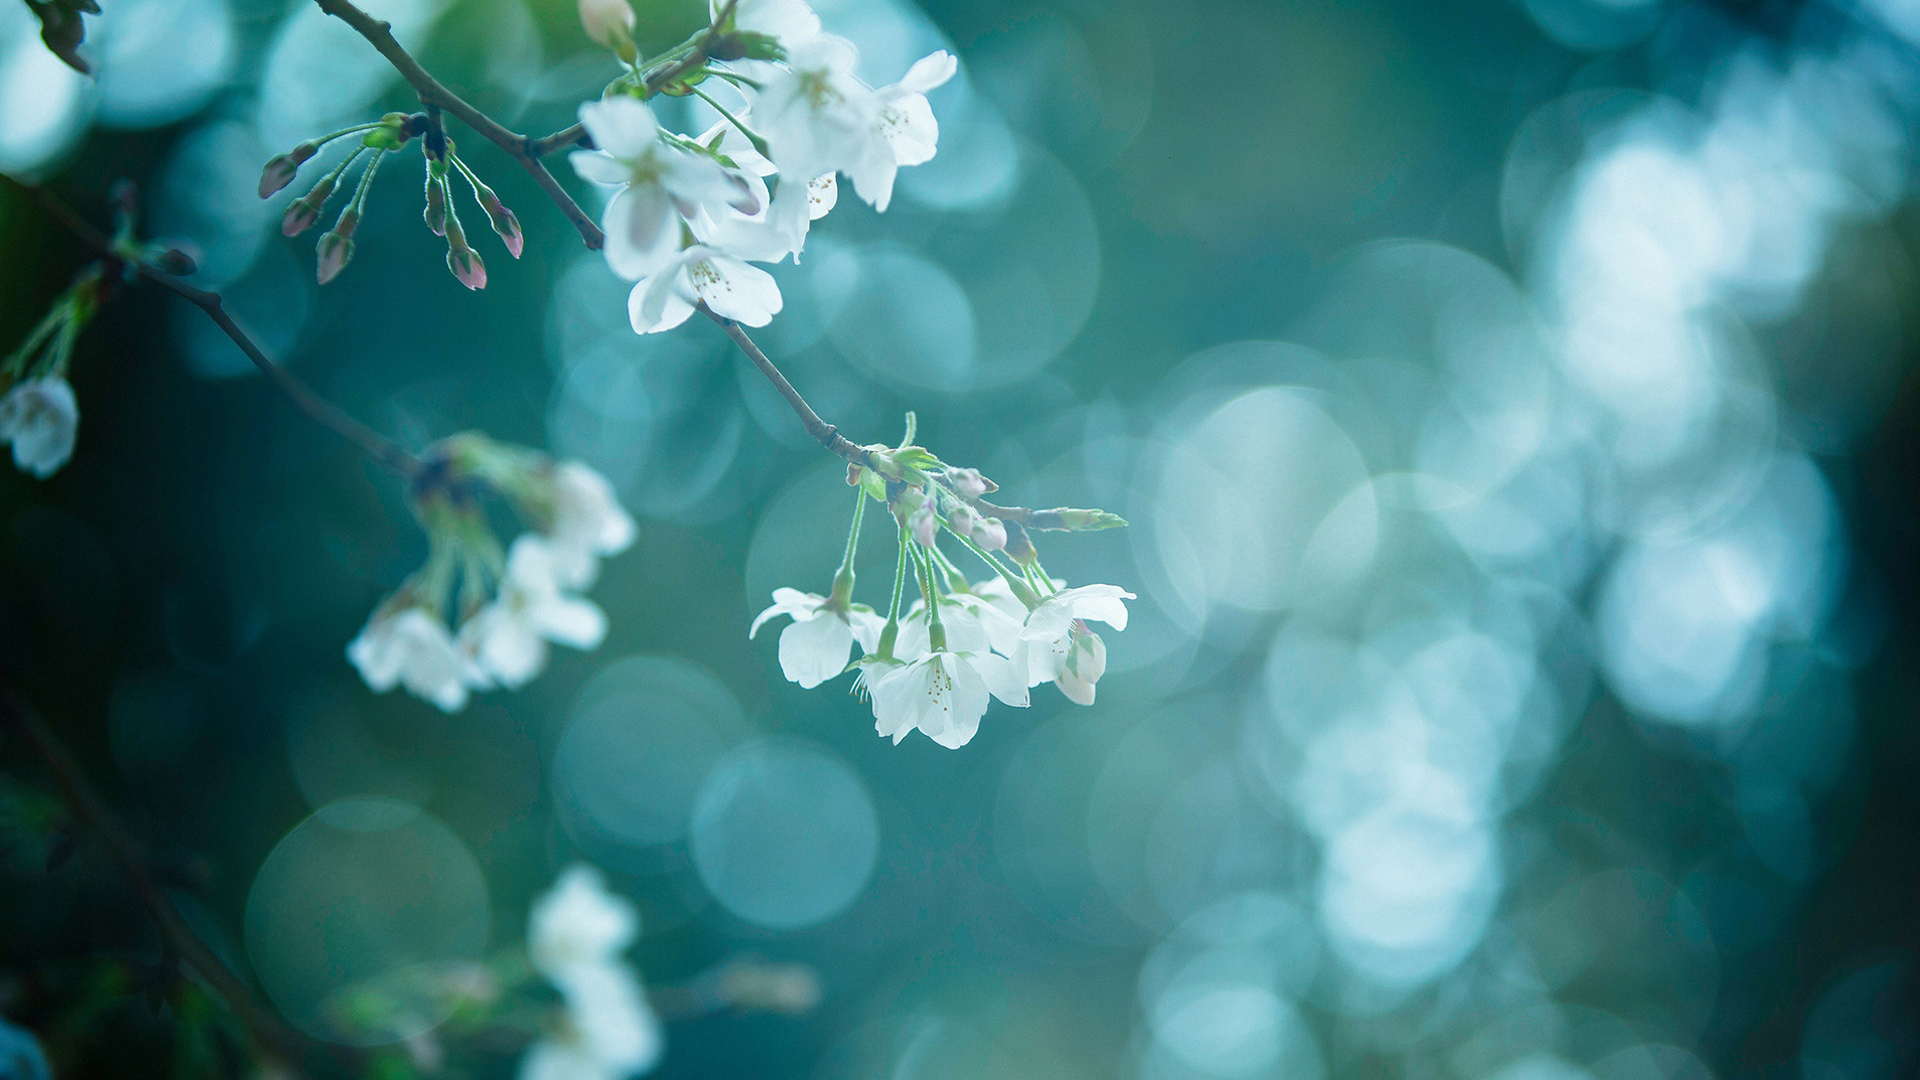 「静待春暖花开」十五张最美花朵摄影壁纸图片欣赏